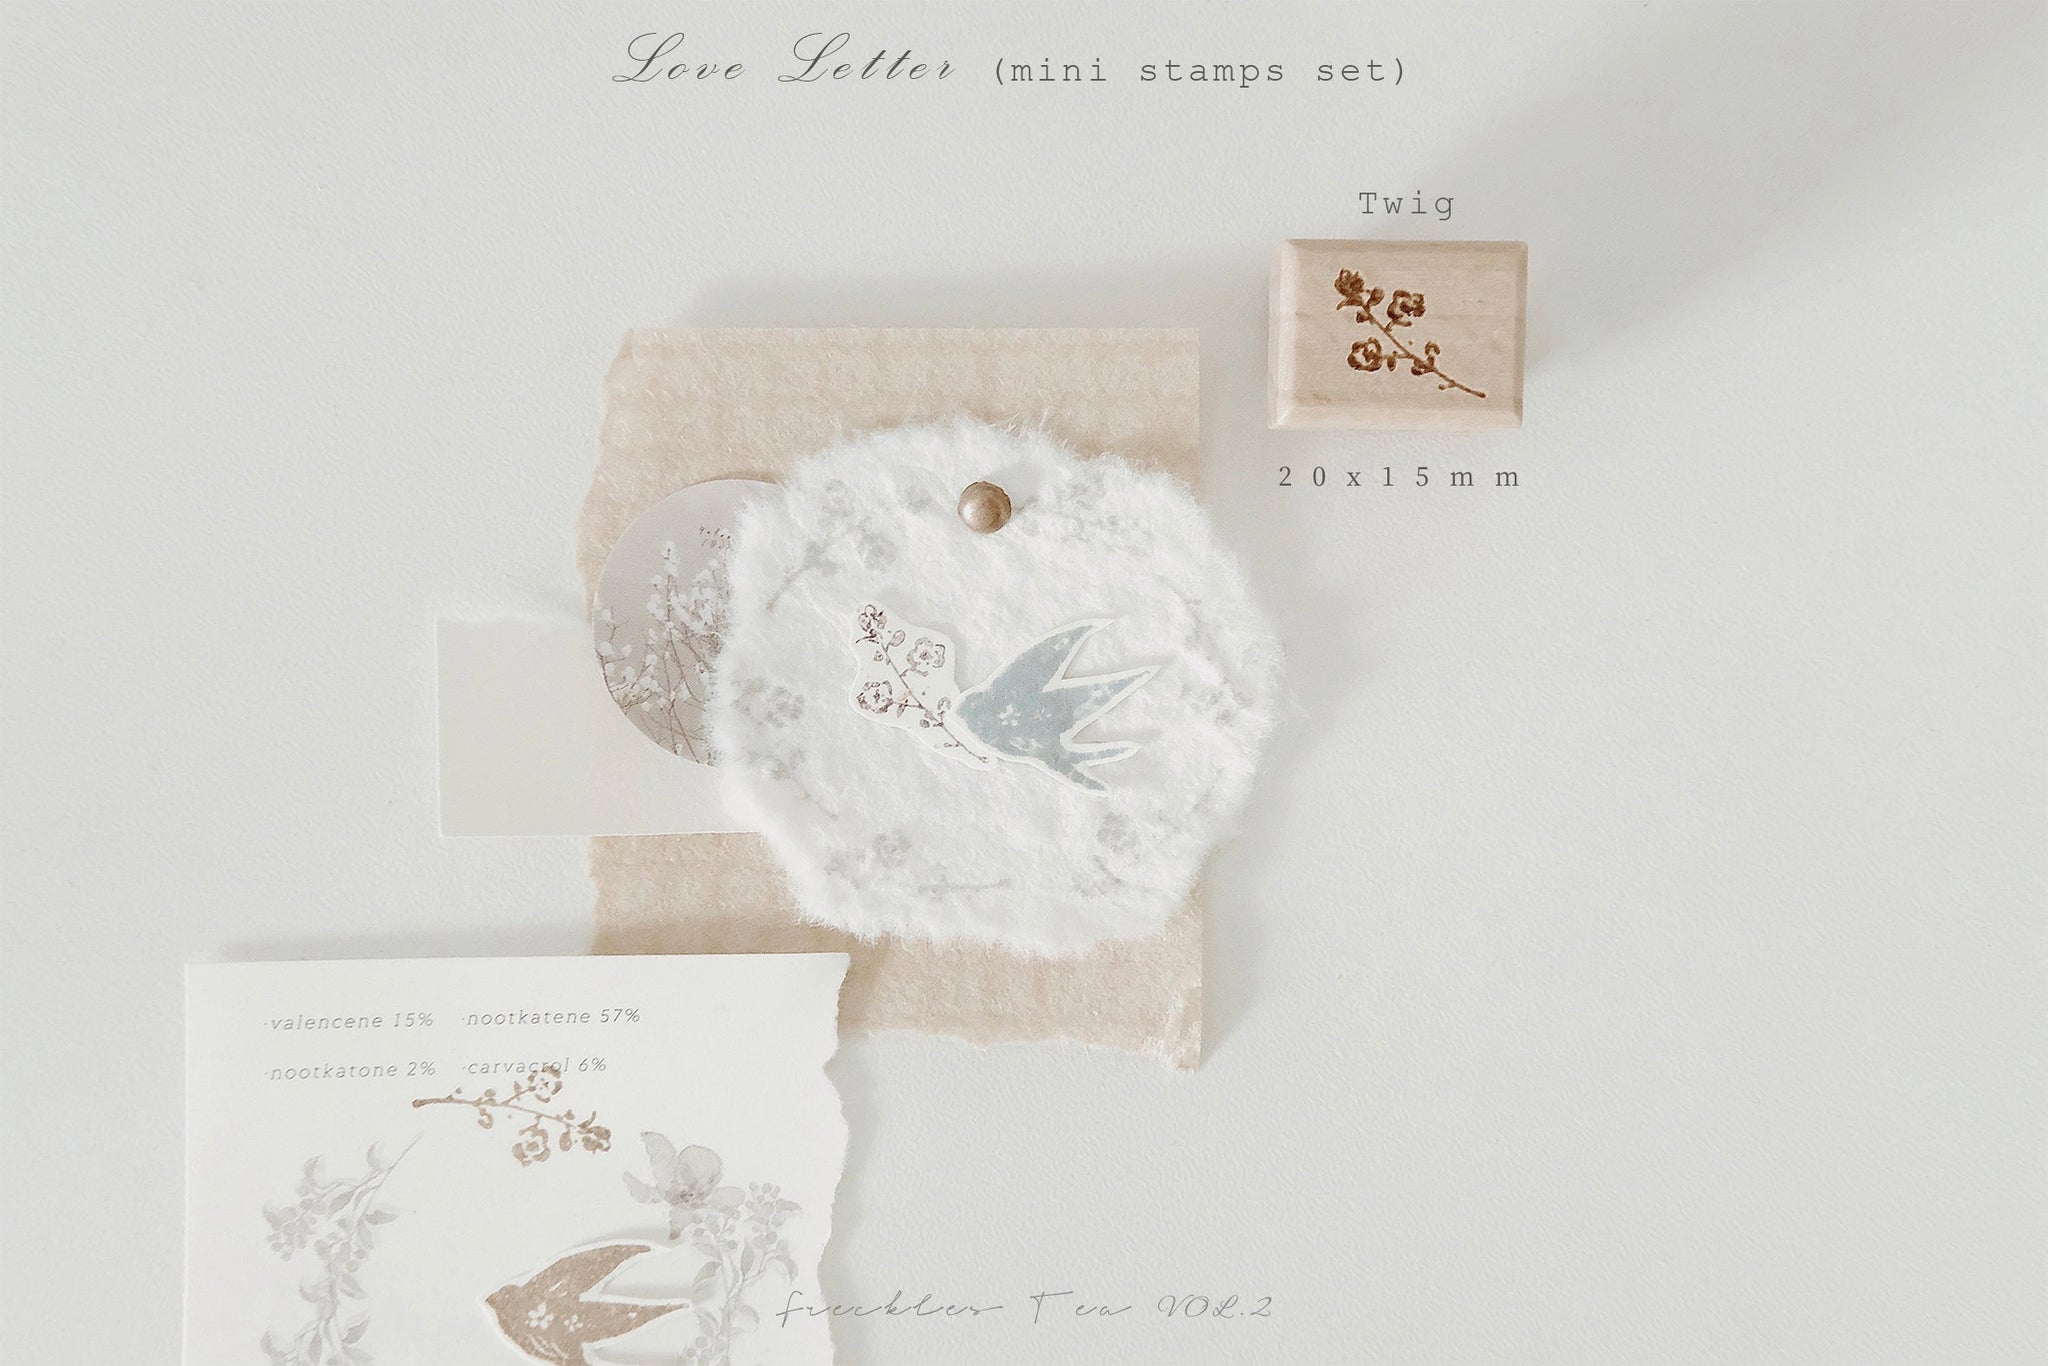 Freckles Tea Mini Stamps Set: Love Letter